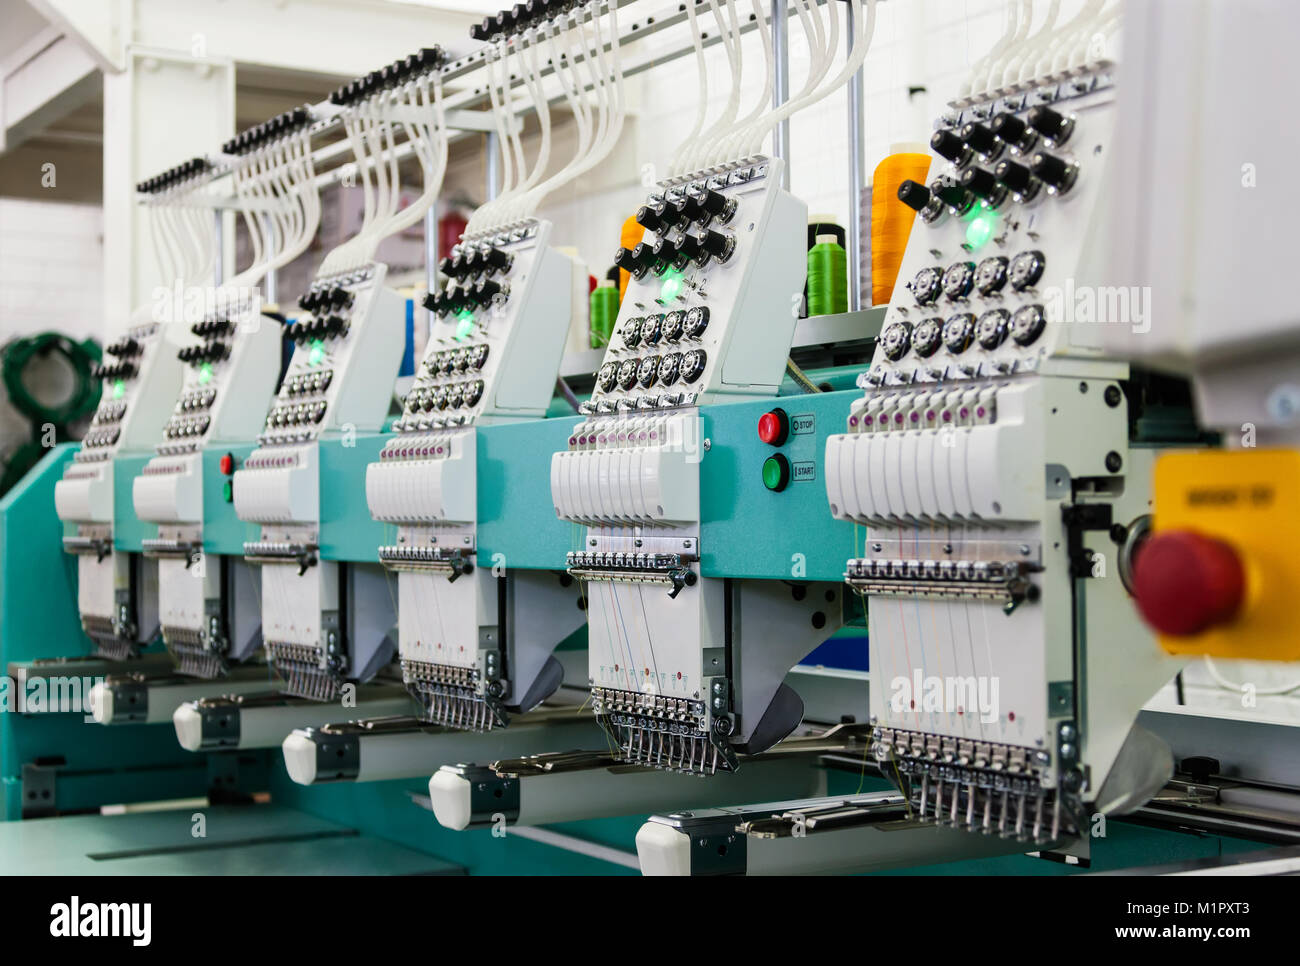 Industria textil fábrica en Gaborone, Botswana, África, industriales, máquinas de bordar Foto de stock